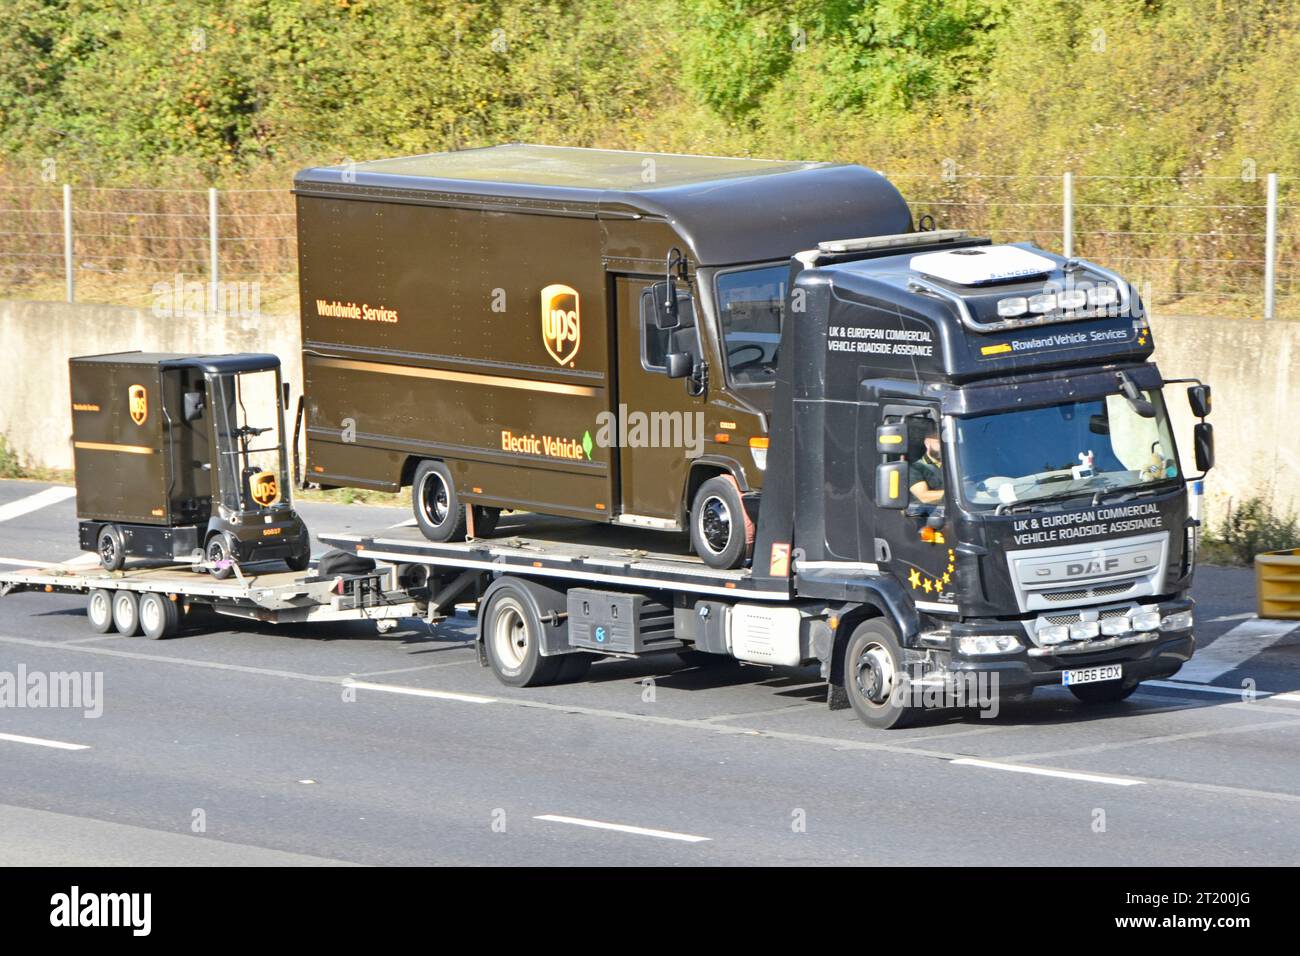 DAF plate-forme plate-forme de récupération livraison camion camion chargé UPS remorque de colis électrique transportant chariot de cargaison UPS miniature sur la route M25 Angleterre Royaume-Uni Banque D'Images